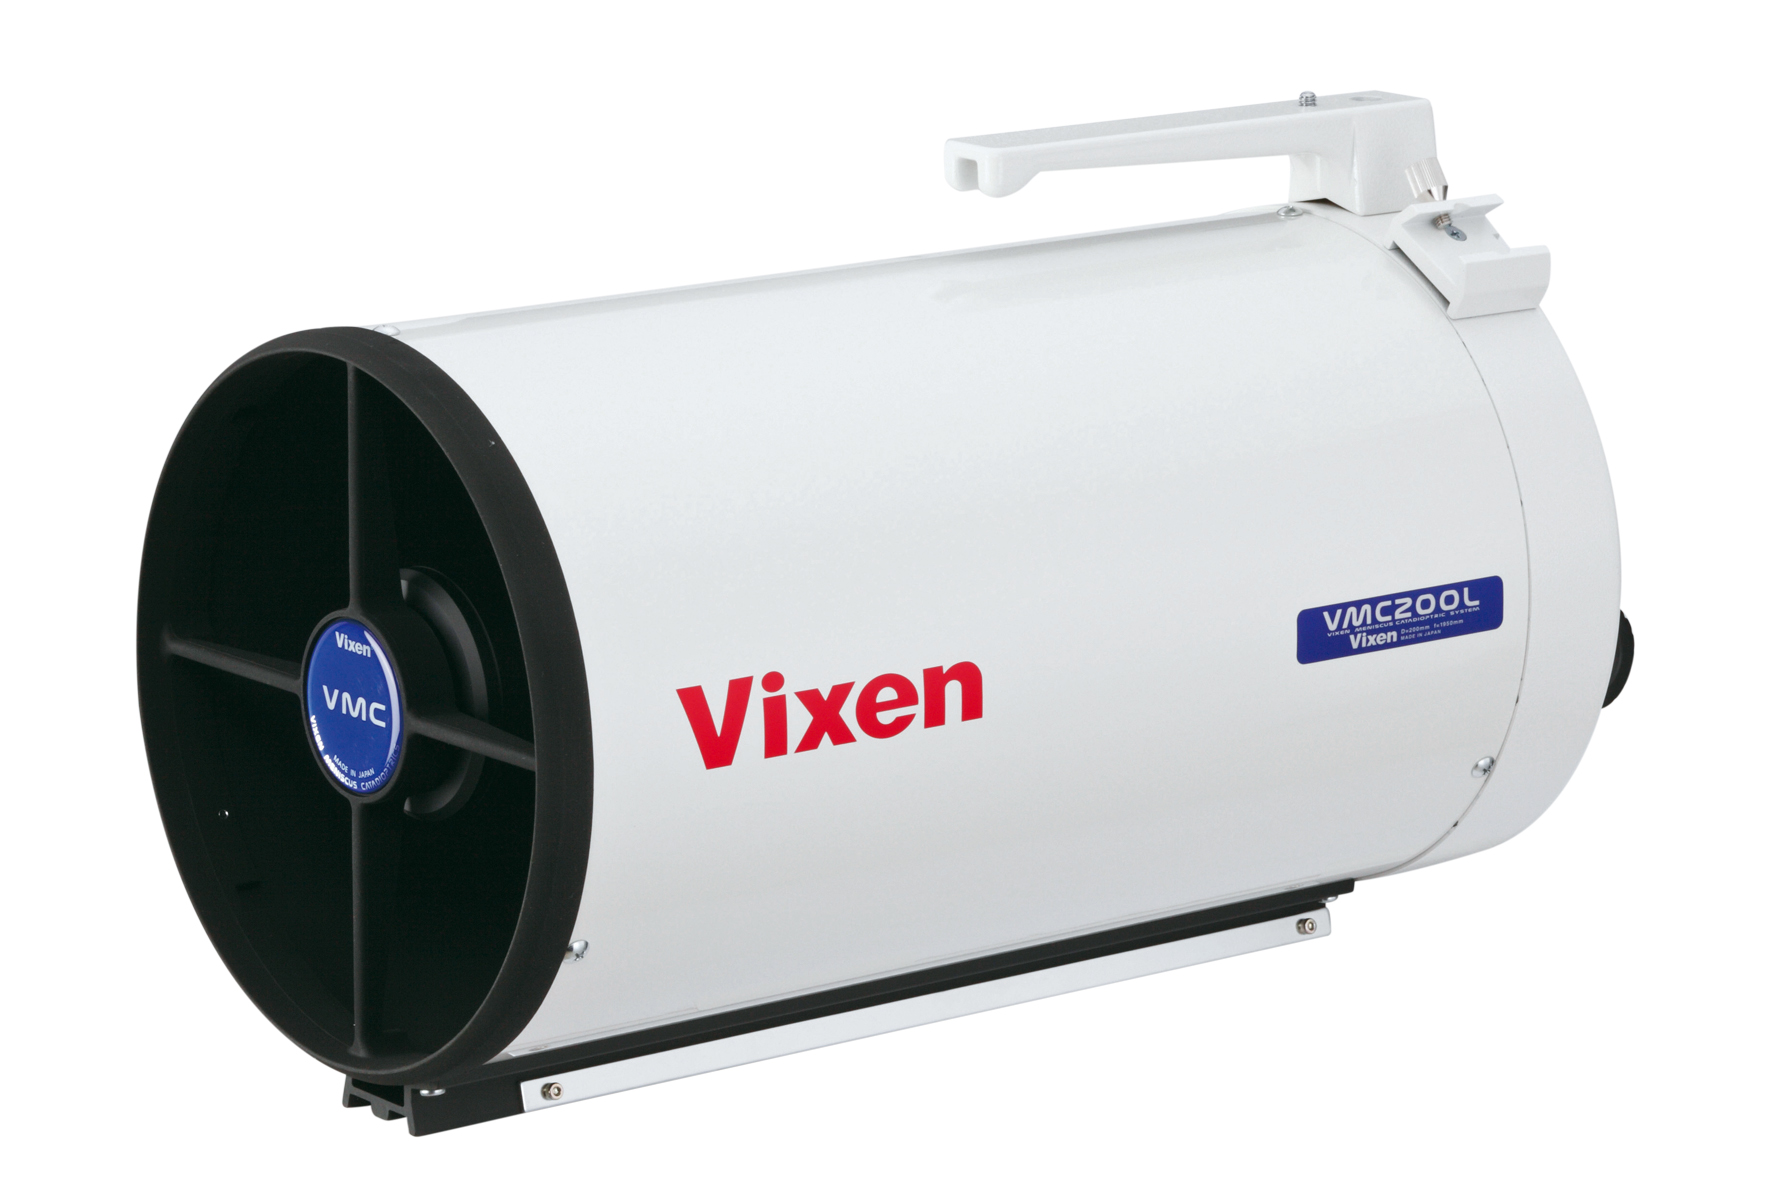 Telescopio reflector Vixen VMC200L Maksutov-Cassegrain - Tubo óptico